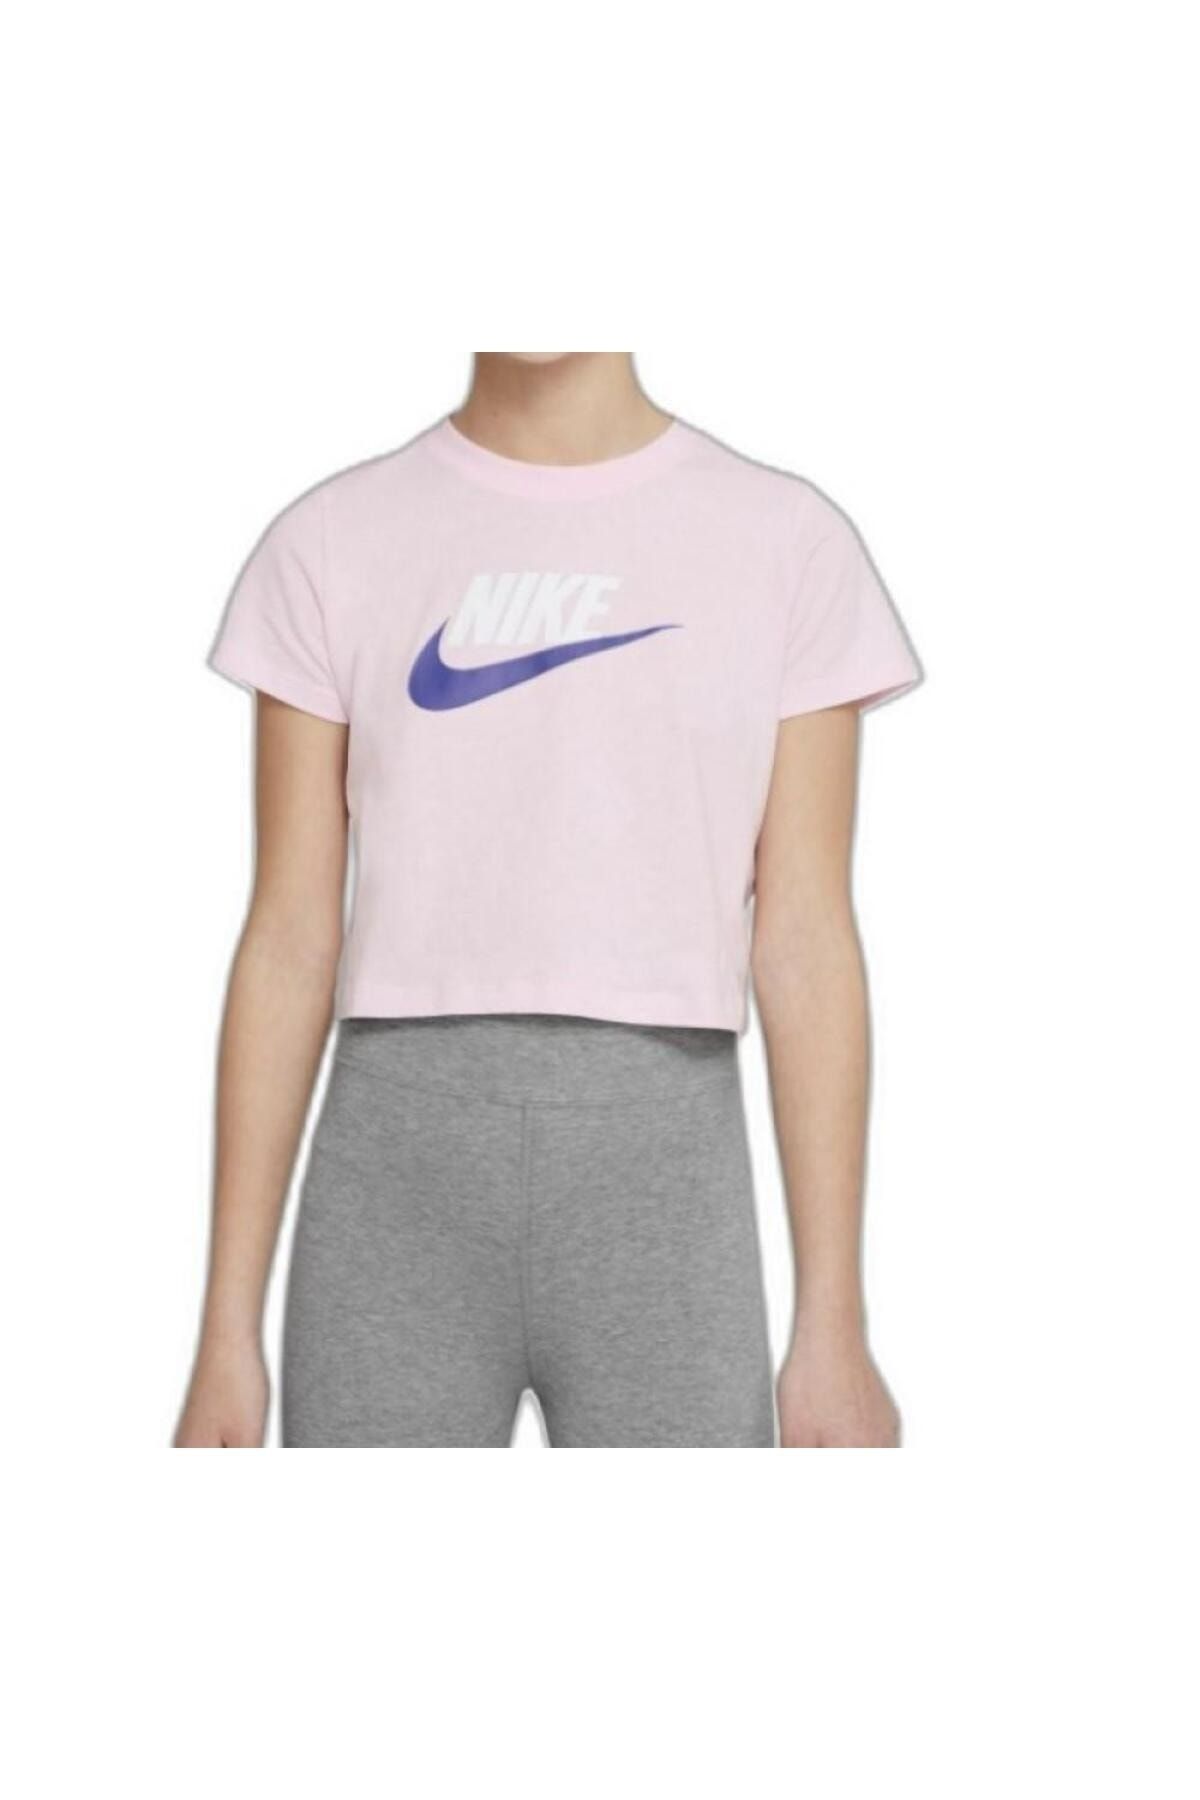 Nike Tee Crop Futura Kız çocuk Pembe T-shirt DA6925663